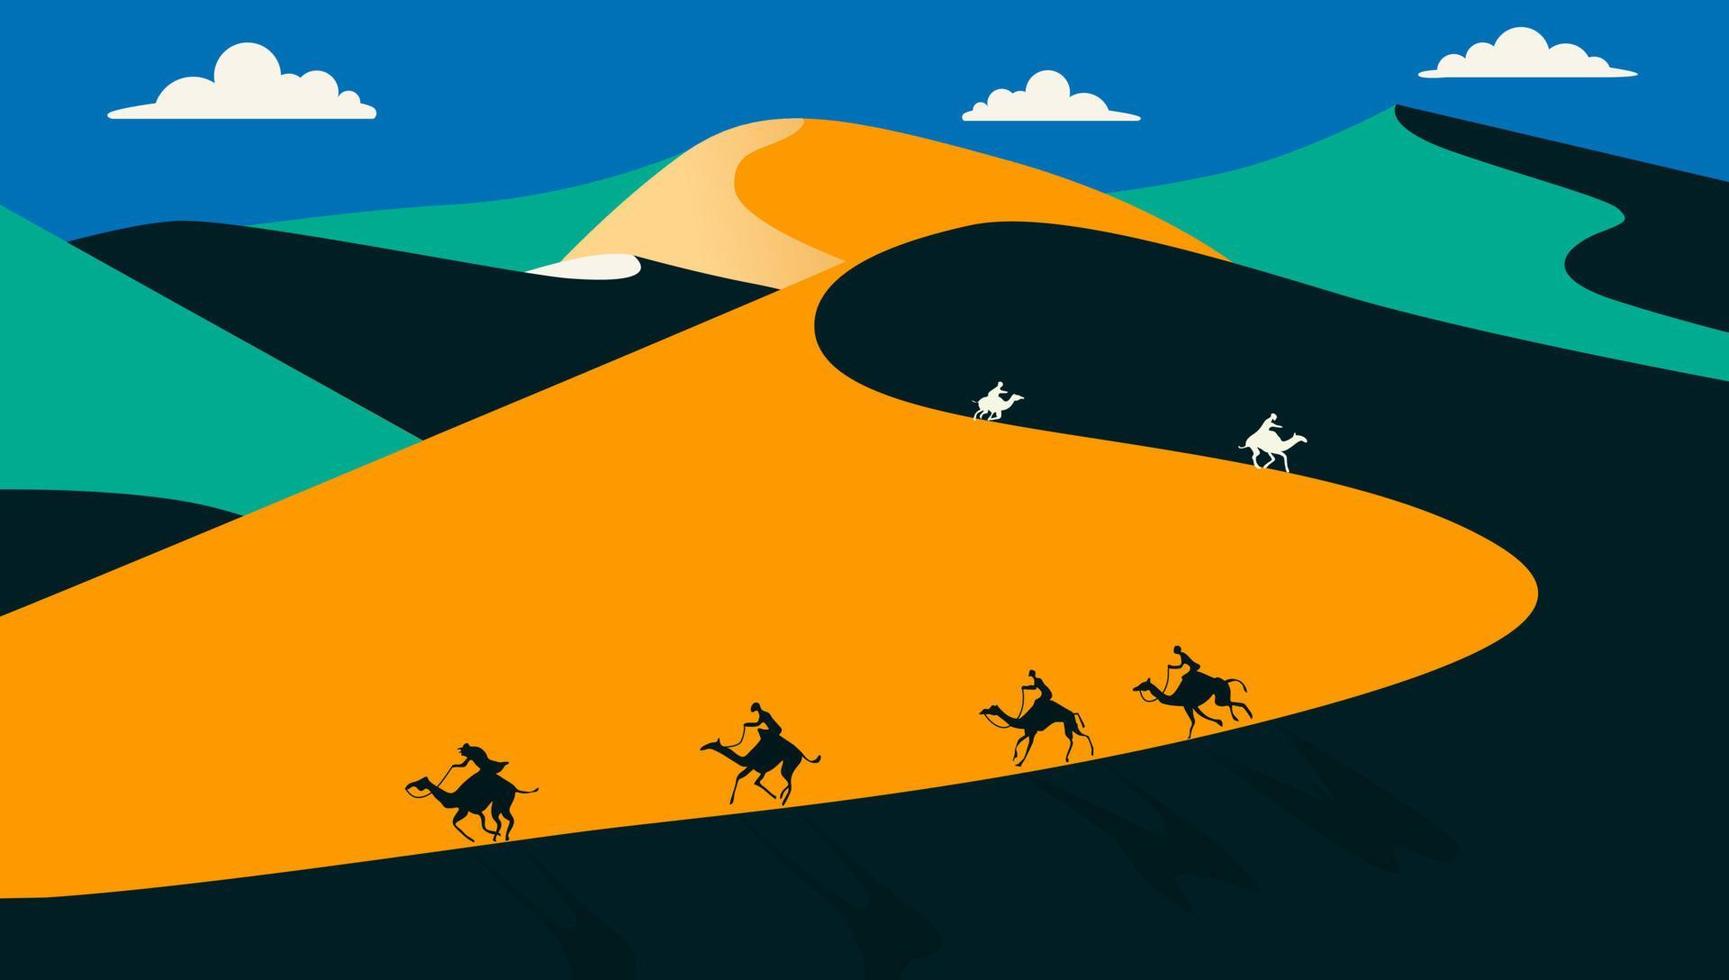 ilustração em vetor design de paisagem plana com deserto, caravana de camelos. ilustração vetorial.